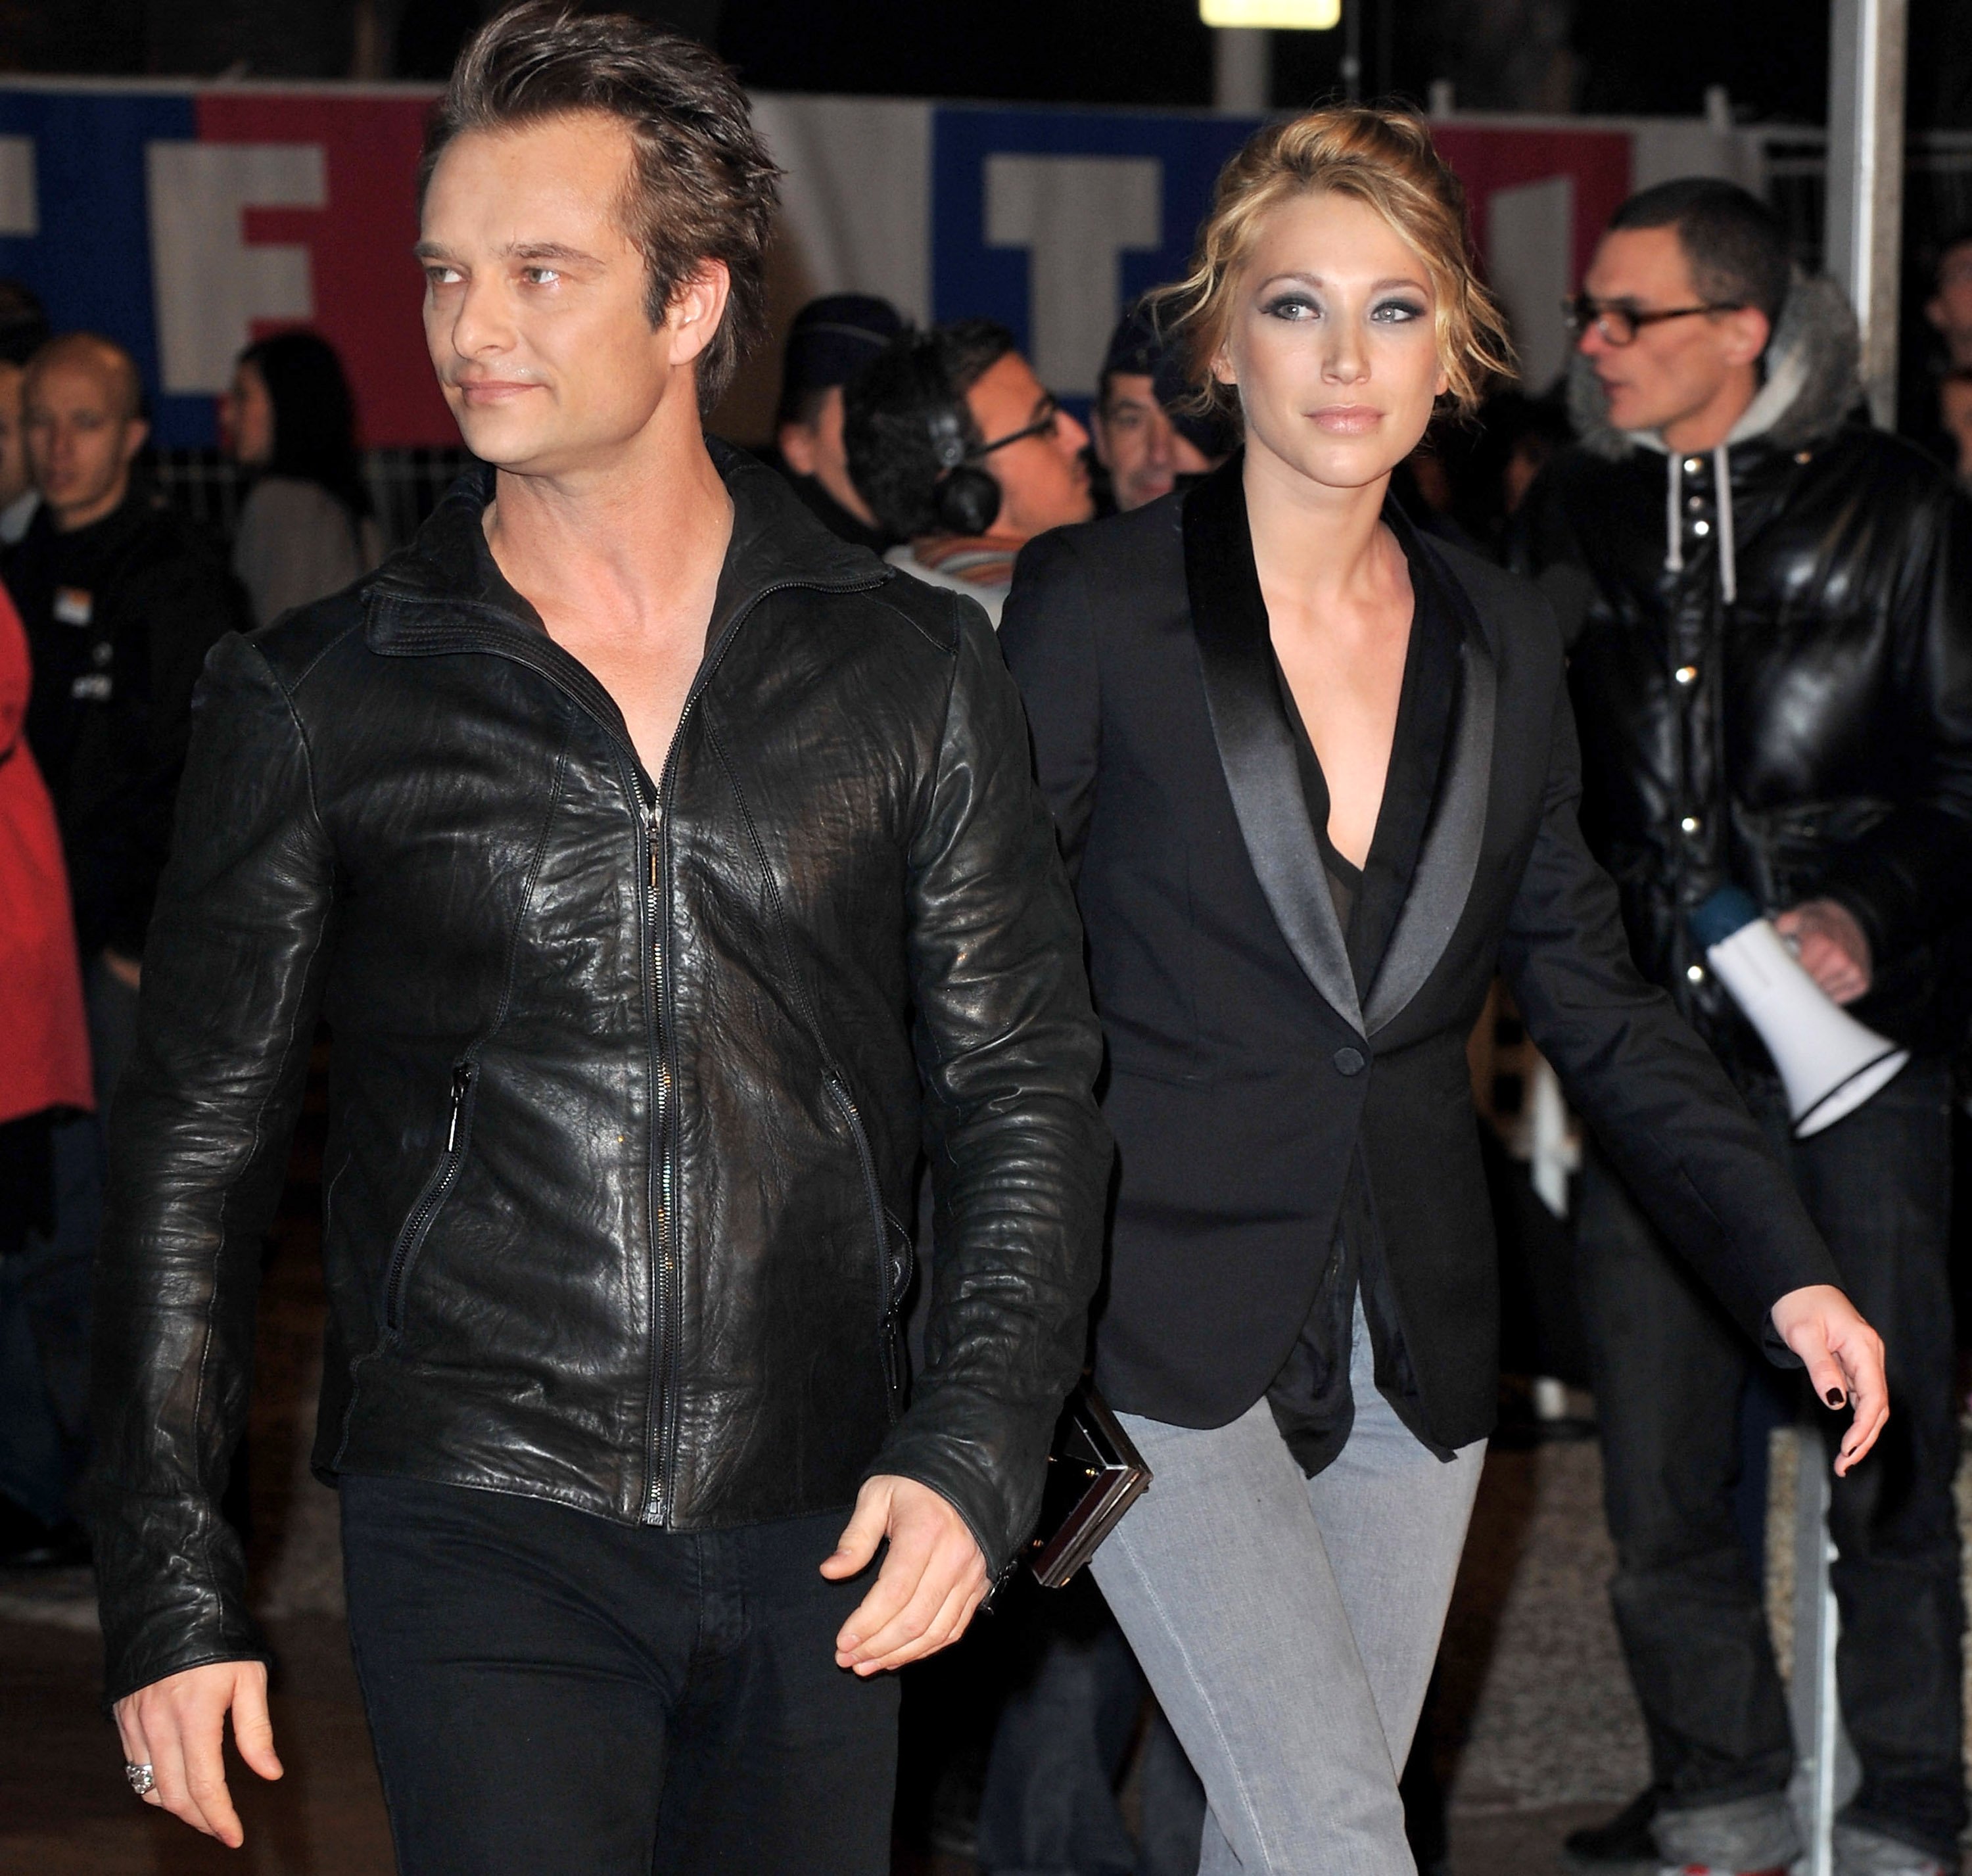 David Hallyday et Laura Smet arrivent au Palais des Festivals pour assister aux NRJ Music Awards le 23 janvier 2010 à Cannes. | Photo : Getty Images